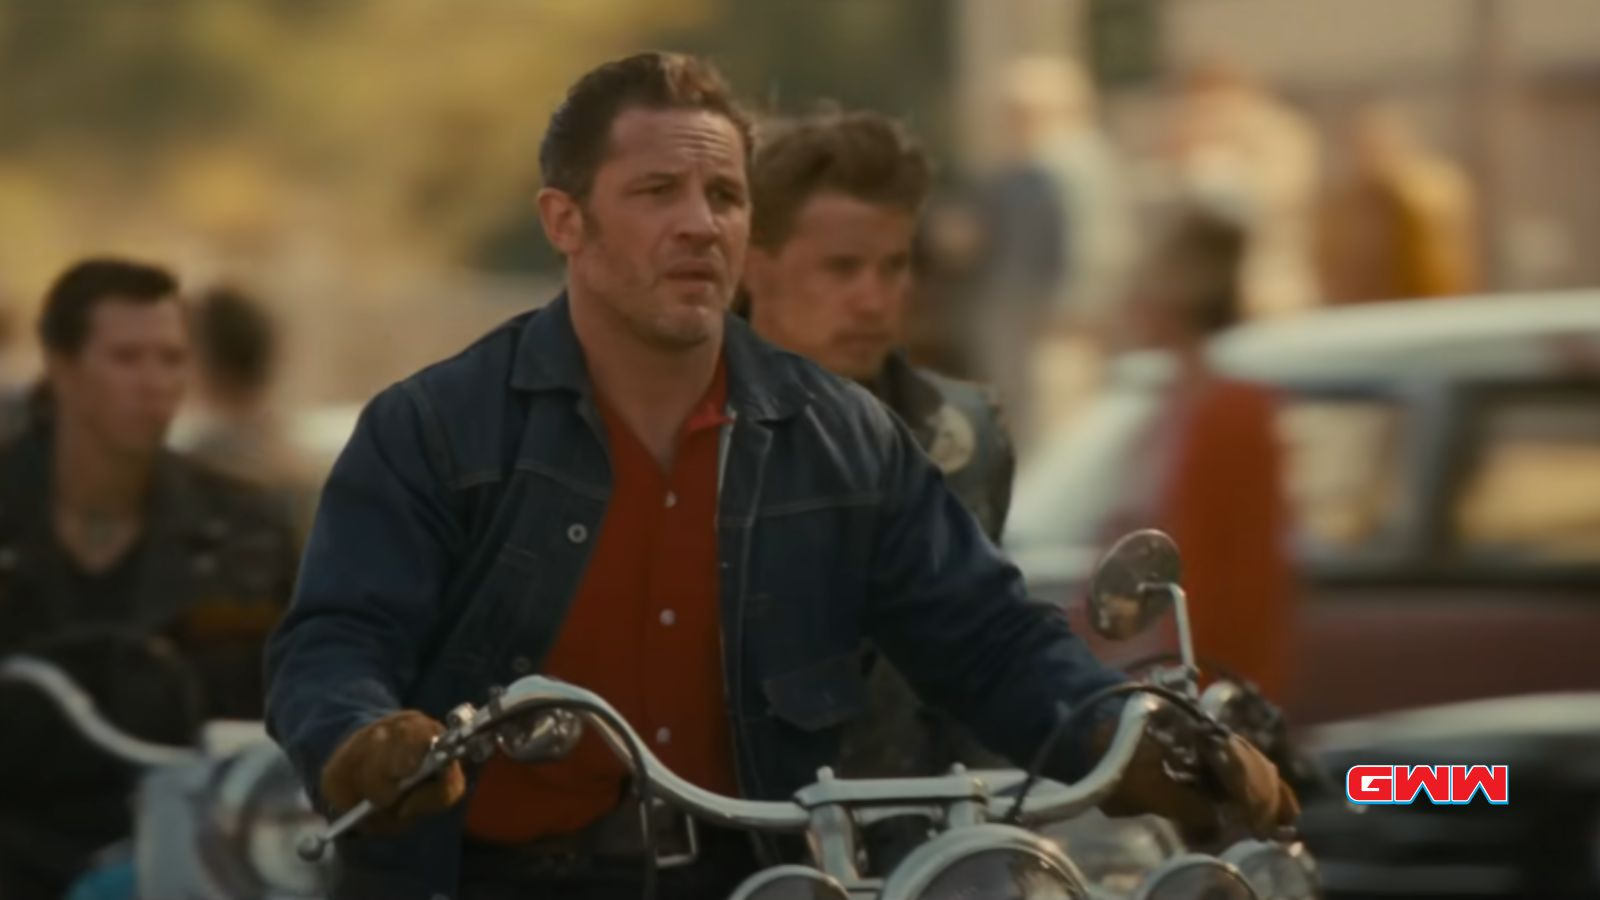 Johnny y Benny andan en motocicleta entre la multitud y llevan una chaqueta vaquera.